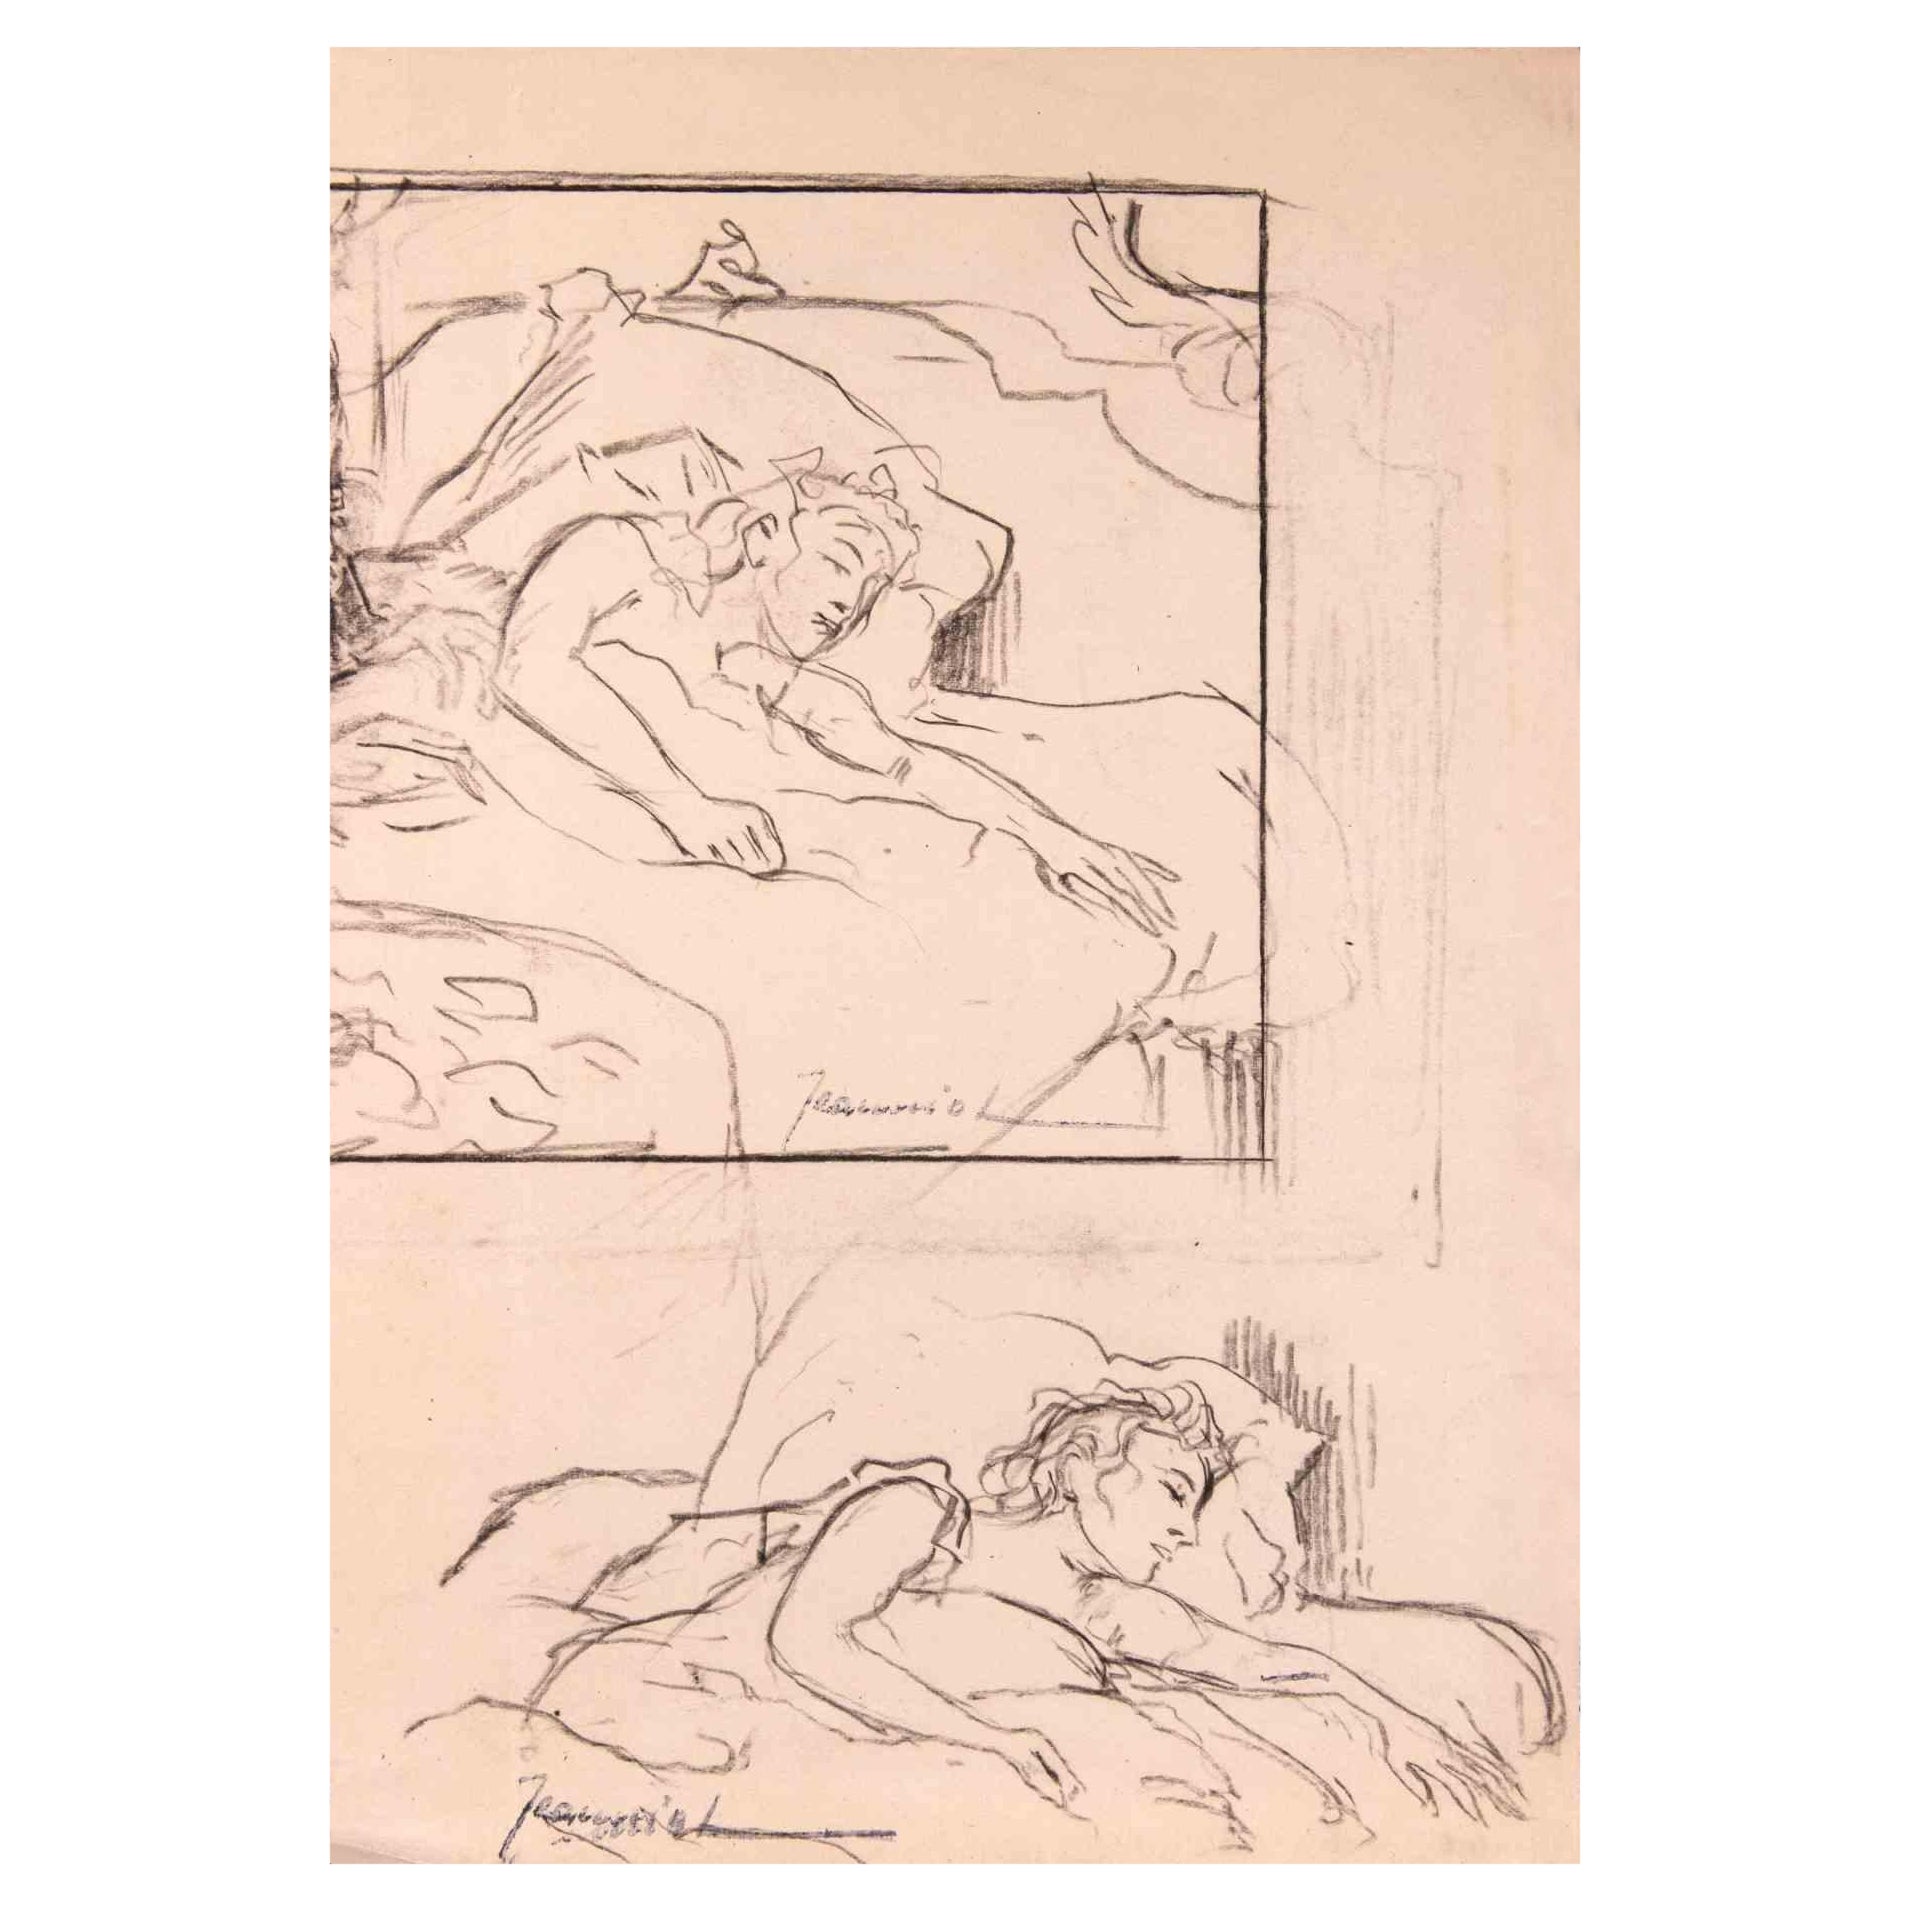 Figures est un dessin original sur papier réalisé par le peintre Pierre Georges Jeanniot (1848-1934).

Dessin au fusain.

Signé en bas.

Bonnes conditions.

Pierre-Georges Jeanniot (1848-1934) était un peintre, dessinateur, aquarelliste et graveur